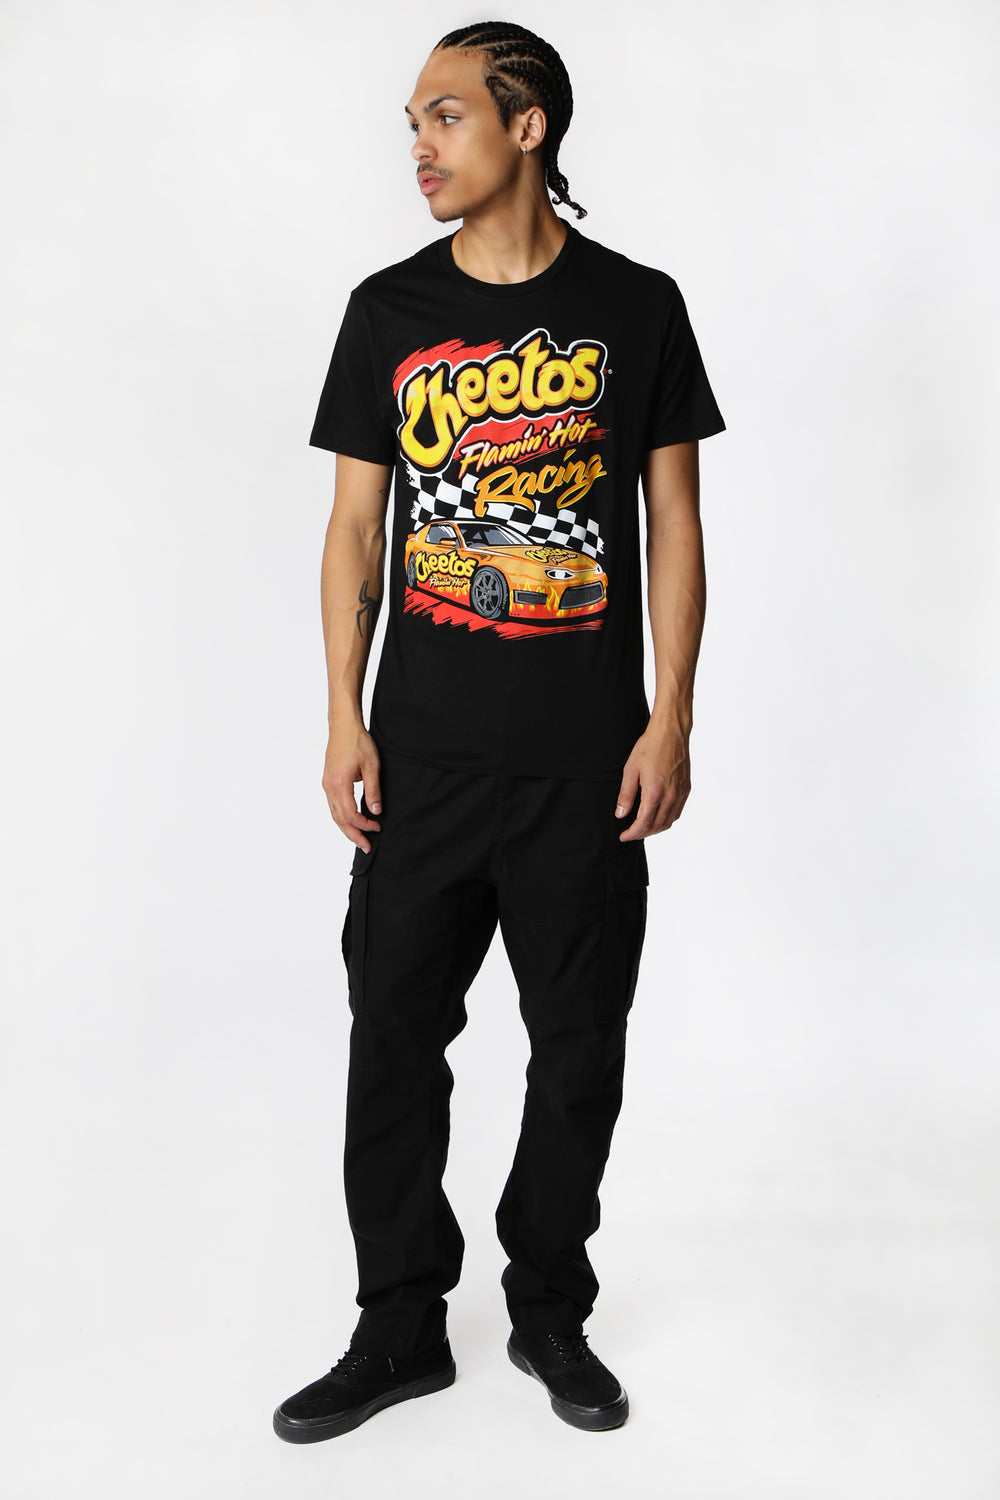 T-Shirt Imprimé Cheetos Flamin' Hot Racing Homme T-Shirt Imprimé Cheetos Flamin' Hot Racing Homme